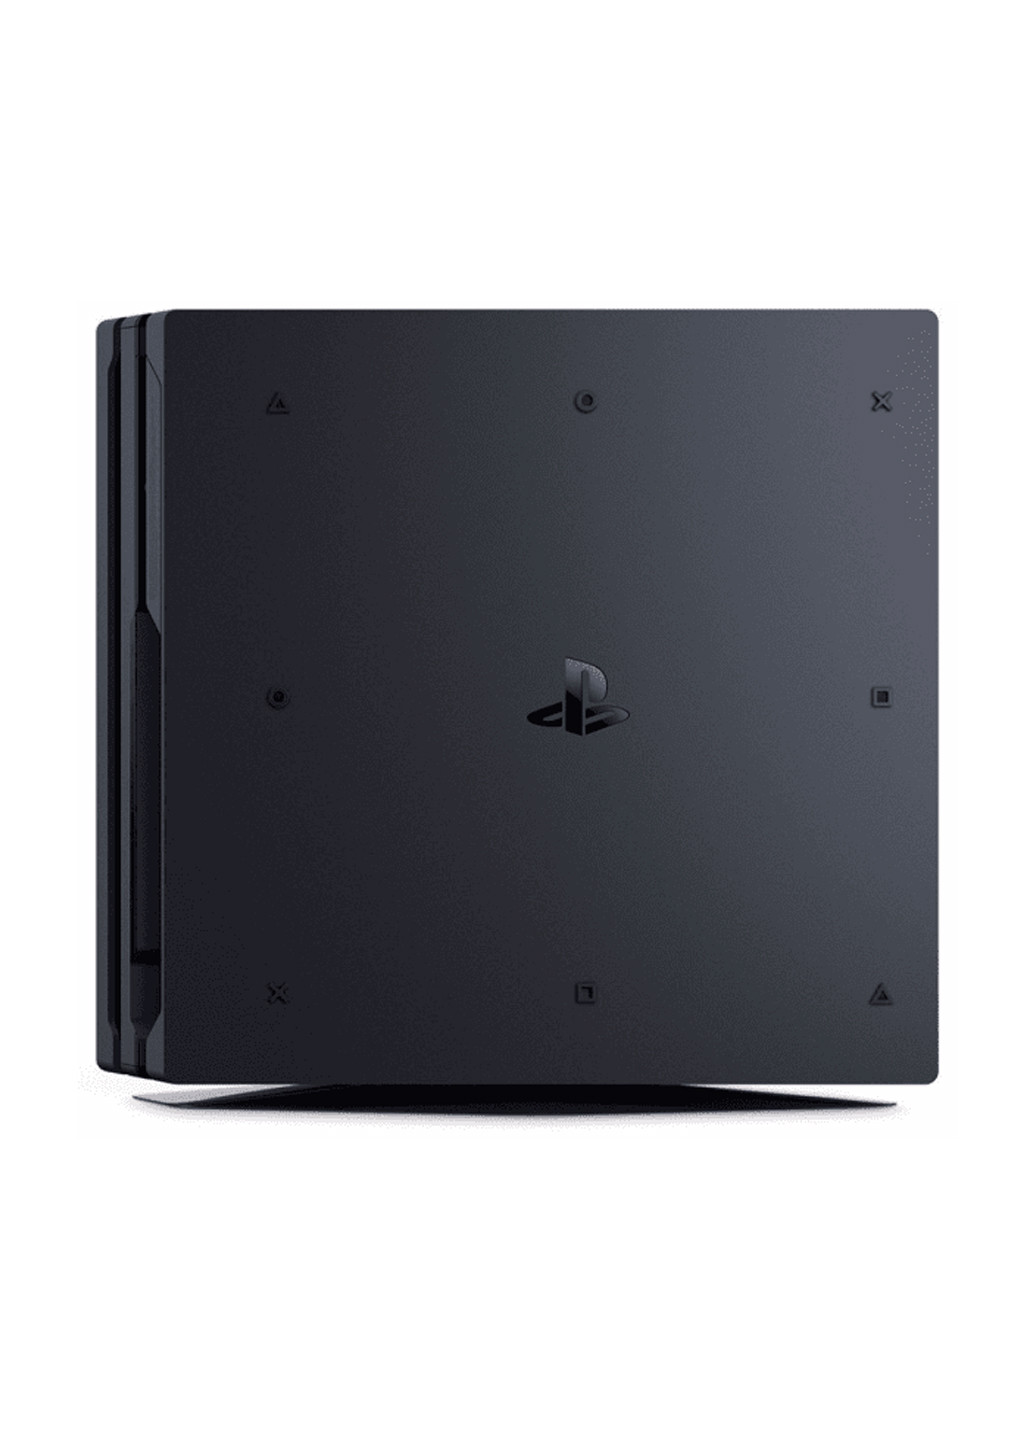 Игровая приставка PlayStation 4 Pro 1Tb Black (God of War & Horizon Zero Dawn CE) чёрная